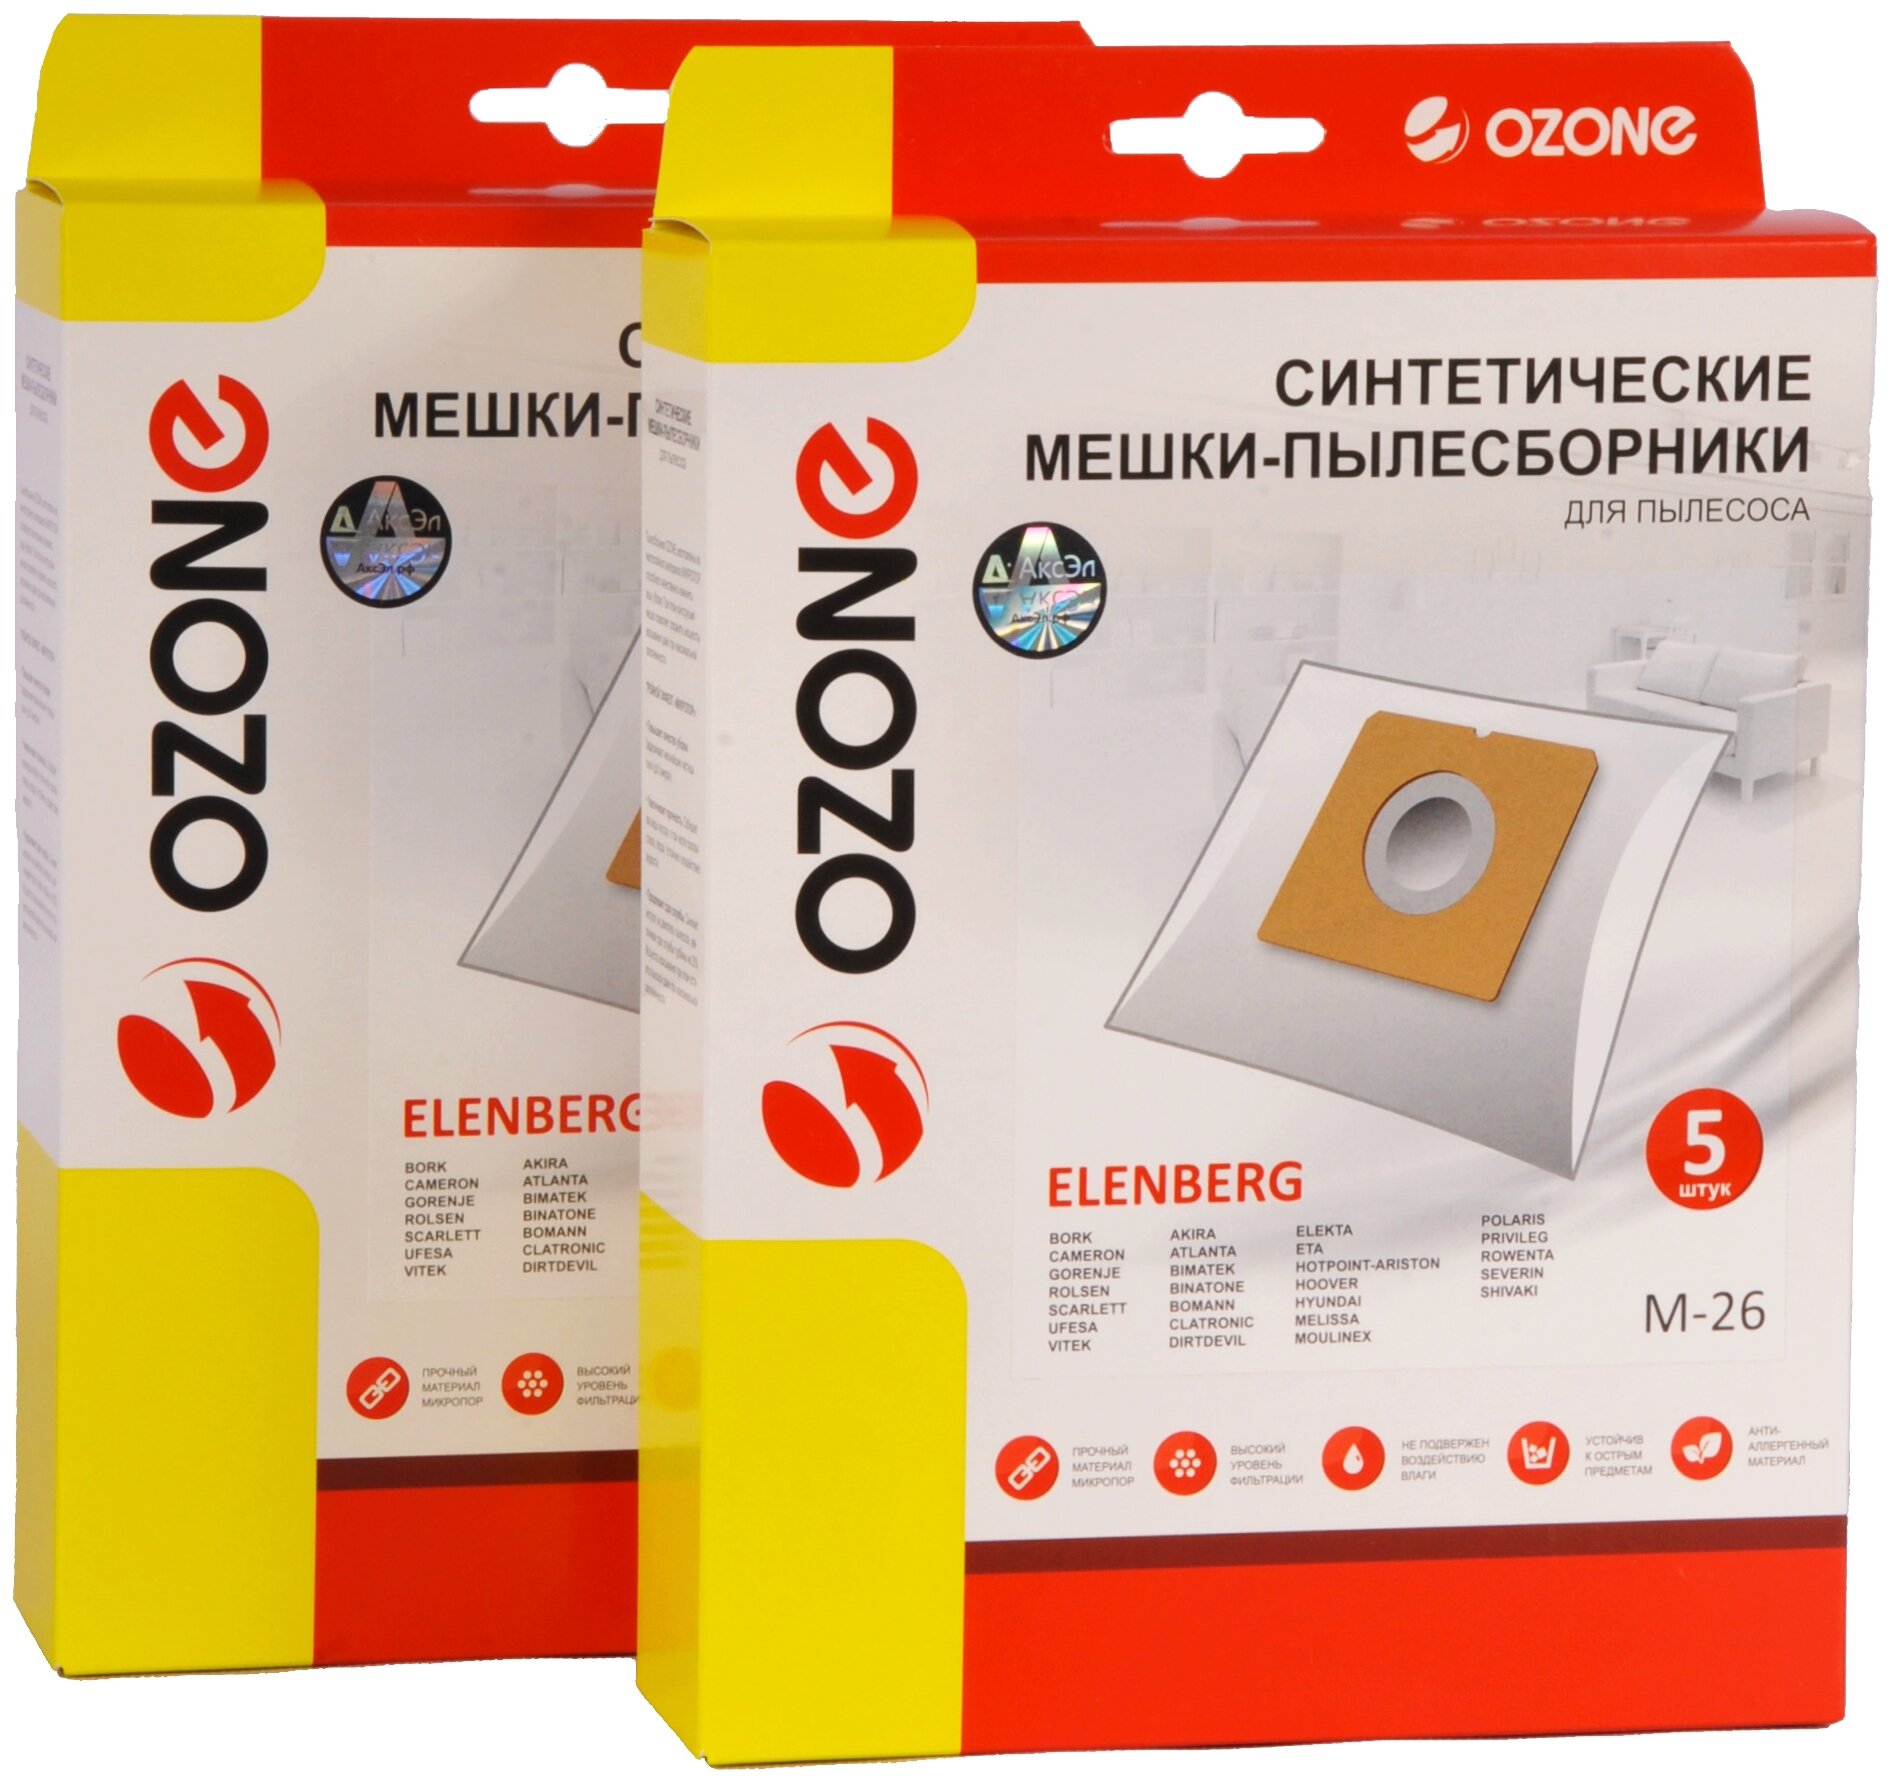 Мешки пылесборники Ozone M-26/2 для пылесоса ELENBERG BIMATEK SEVERIN IDELINE 2 упаковки по 5 шт.